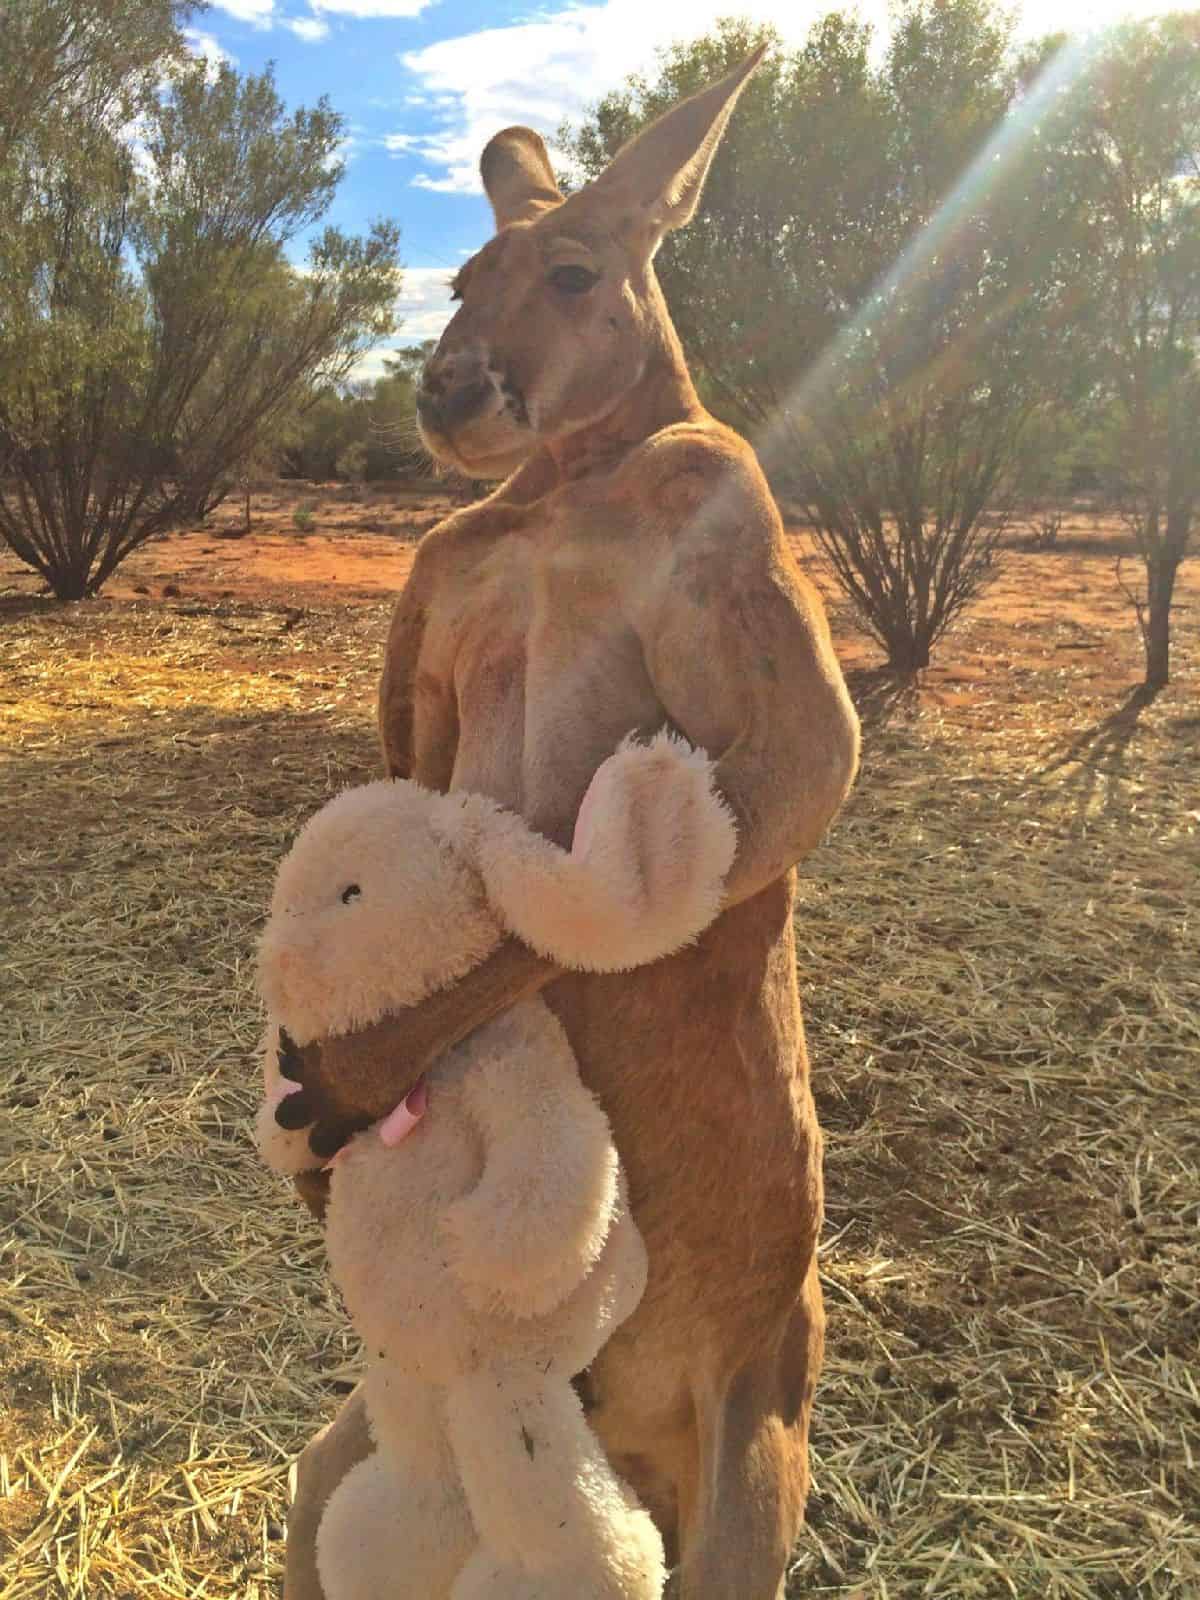 De kangoeroe met zijn teddybeer